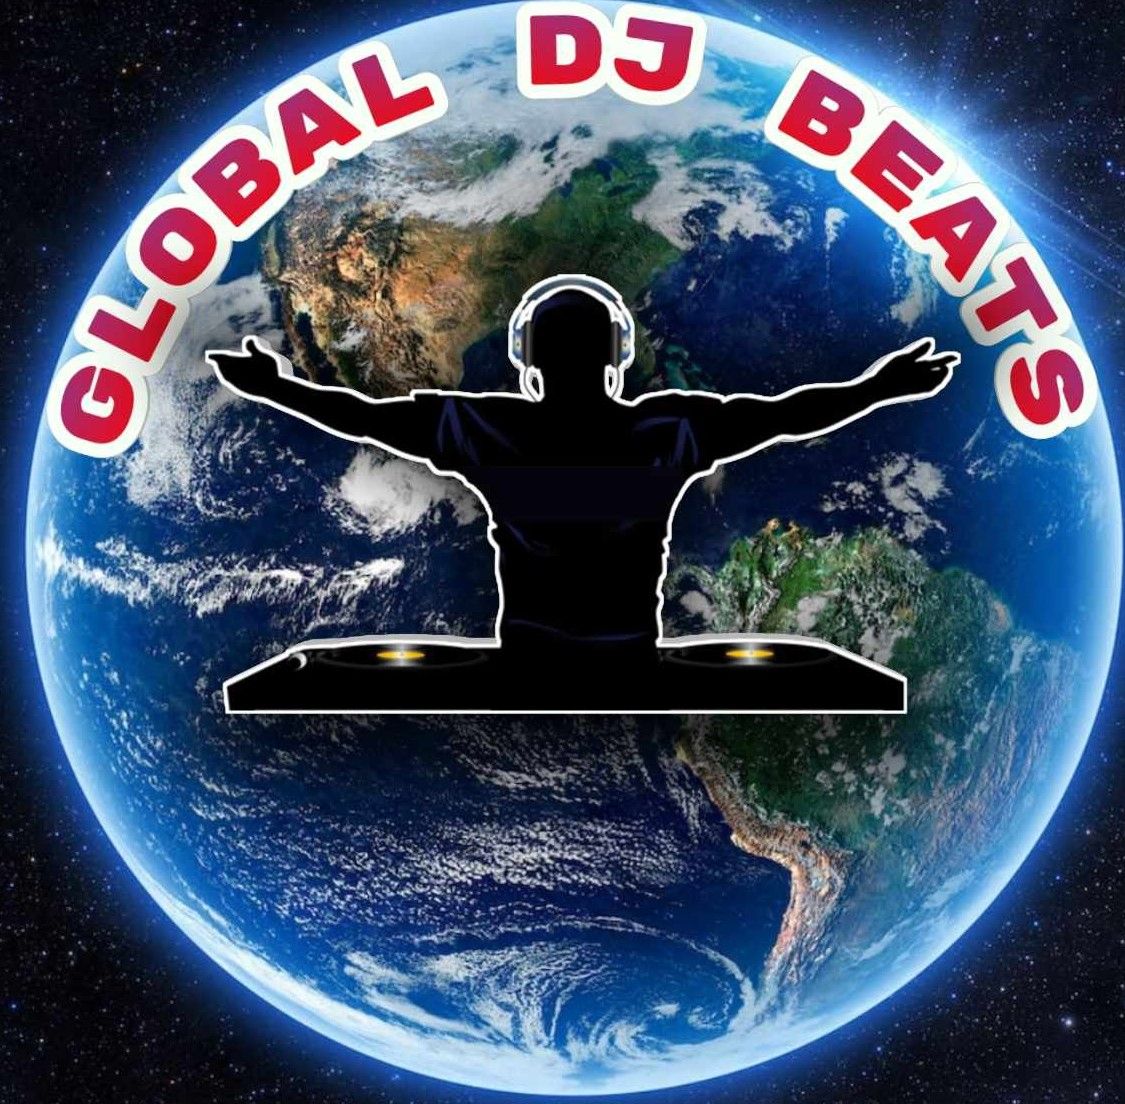 GLOBAL DJ BEATS-VOL4